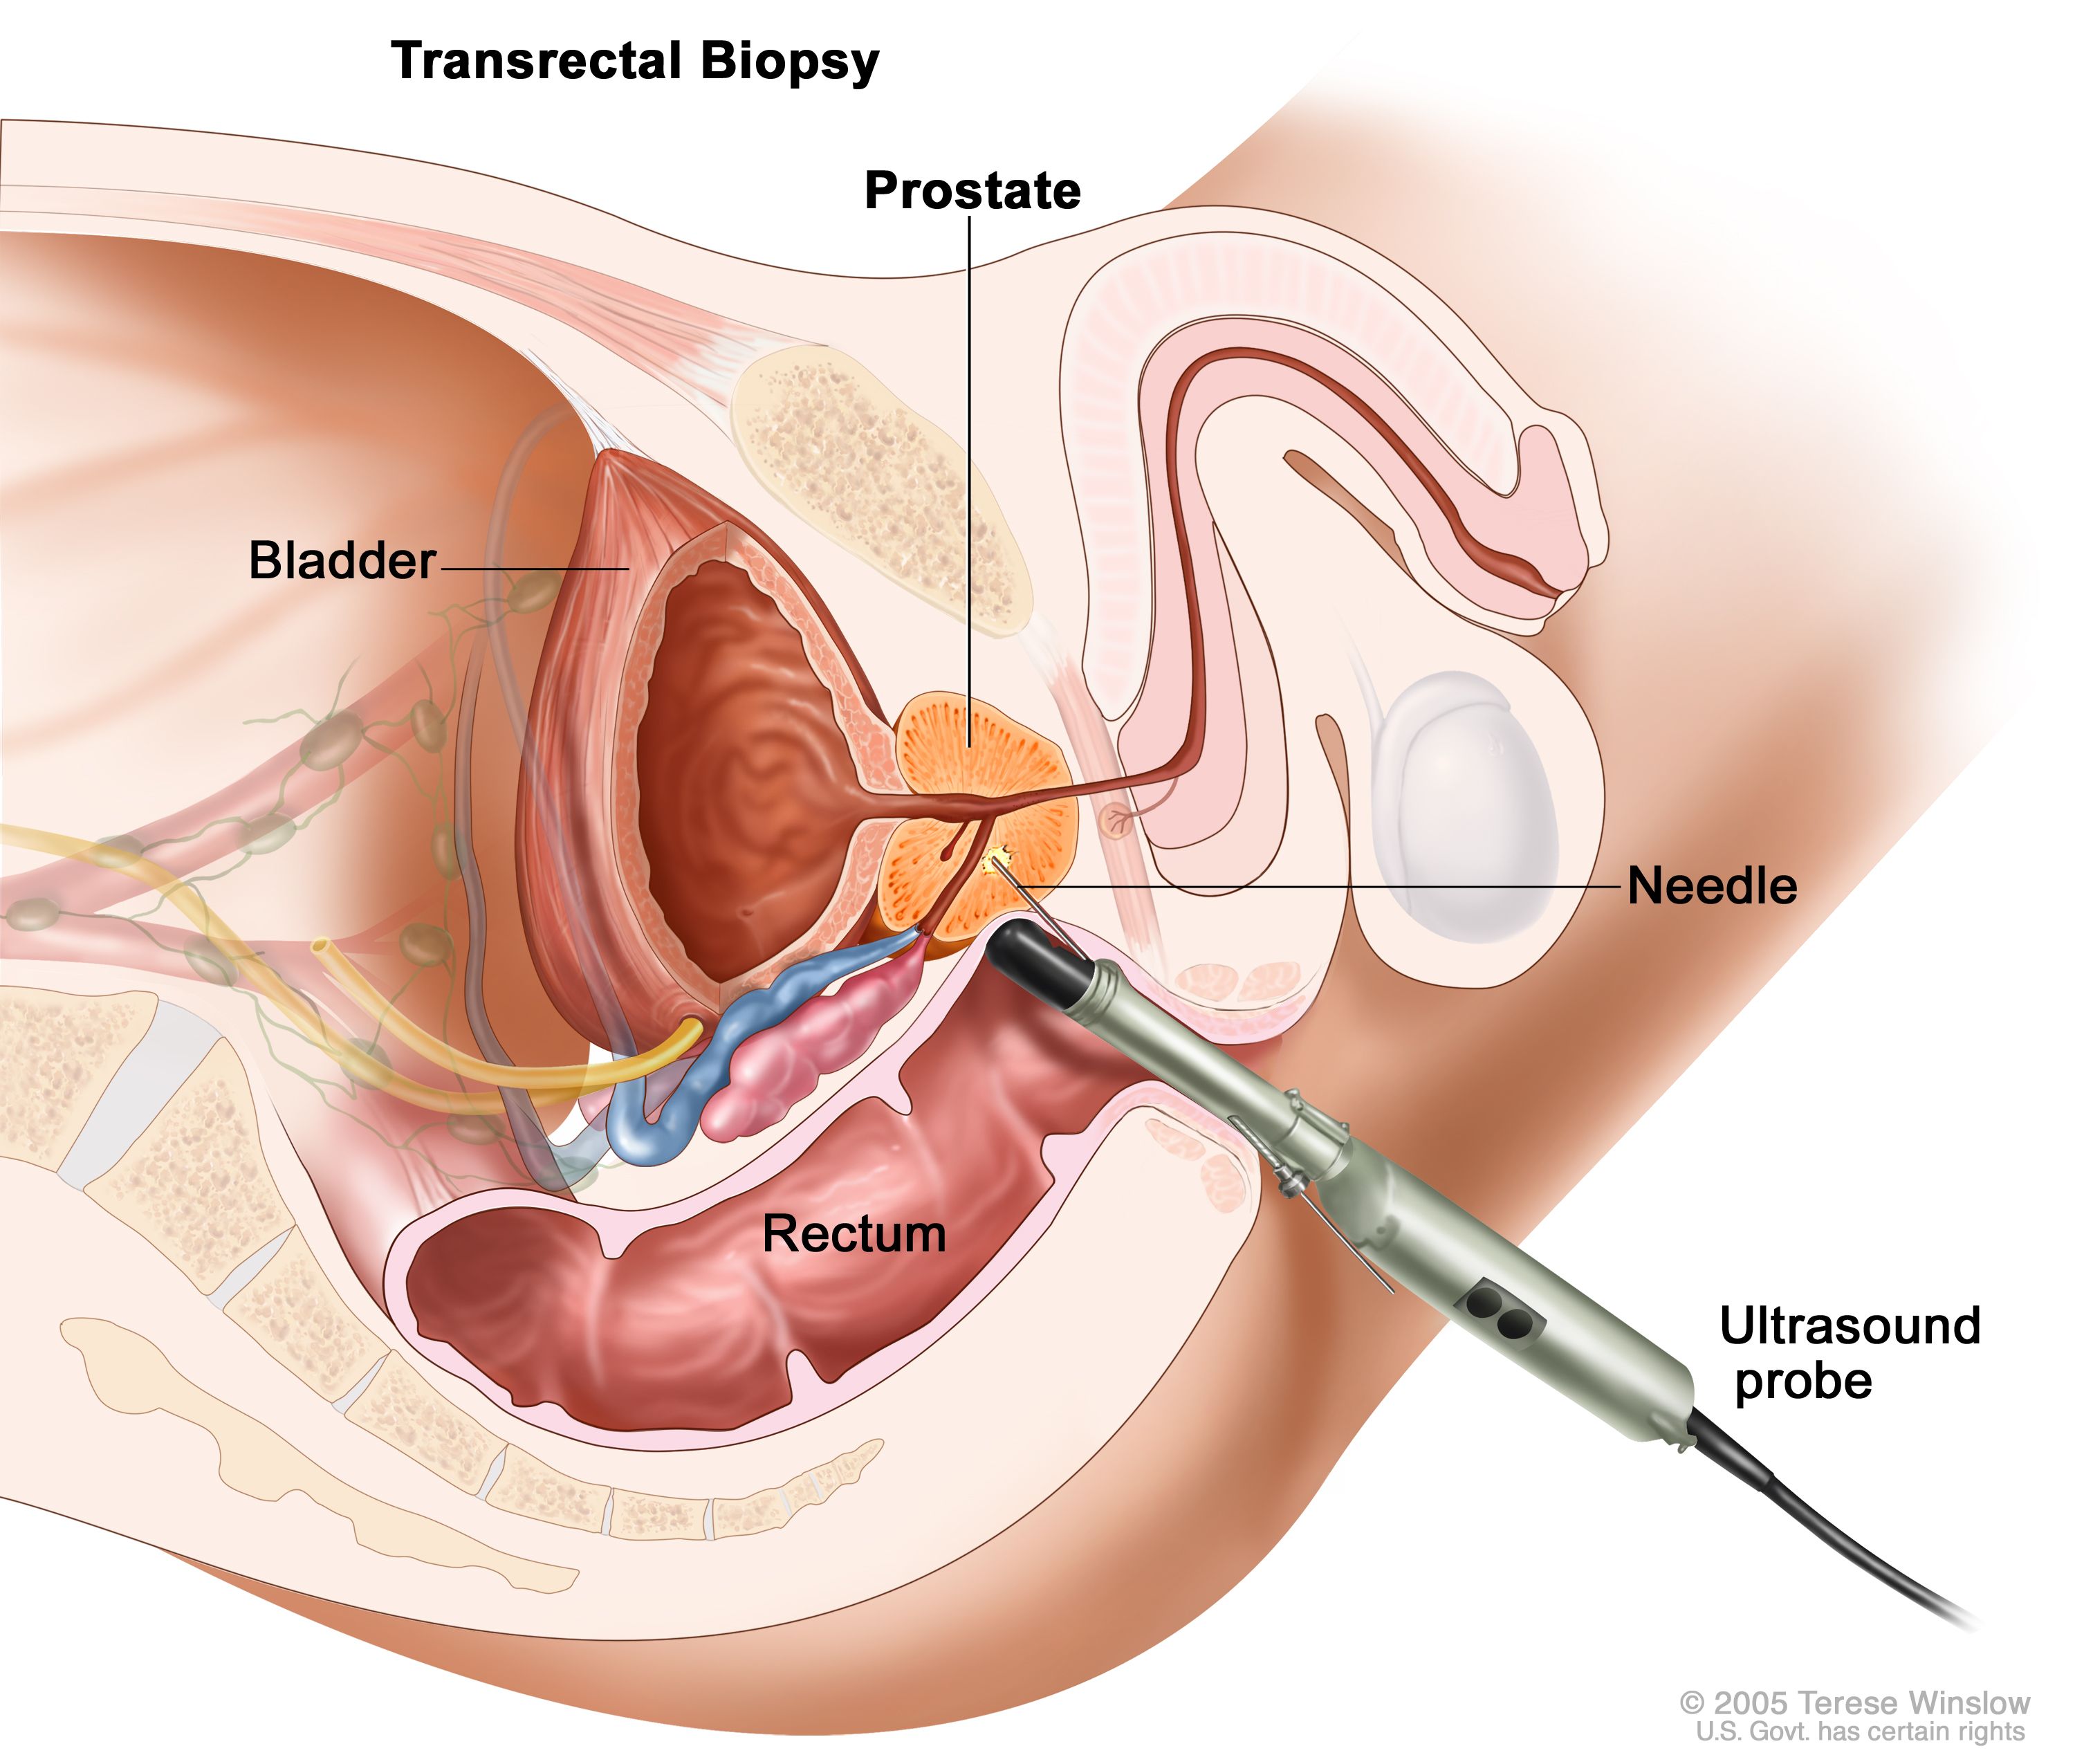 prostate gland surgery risks)